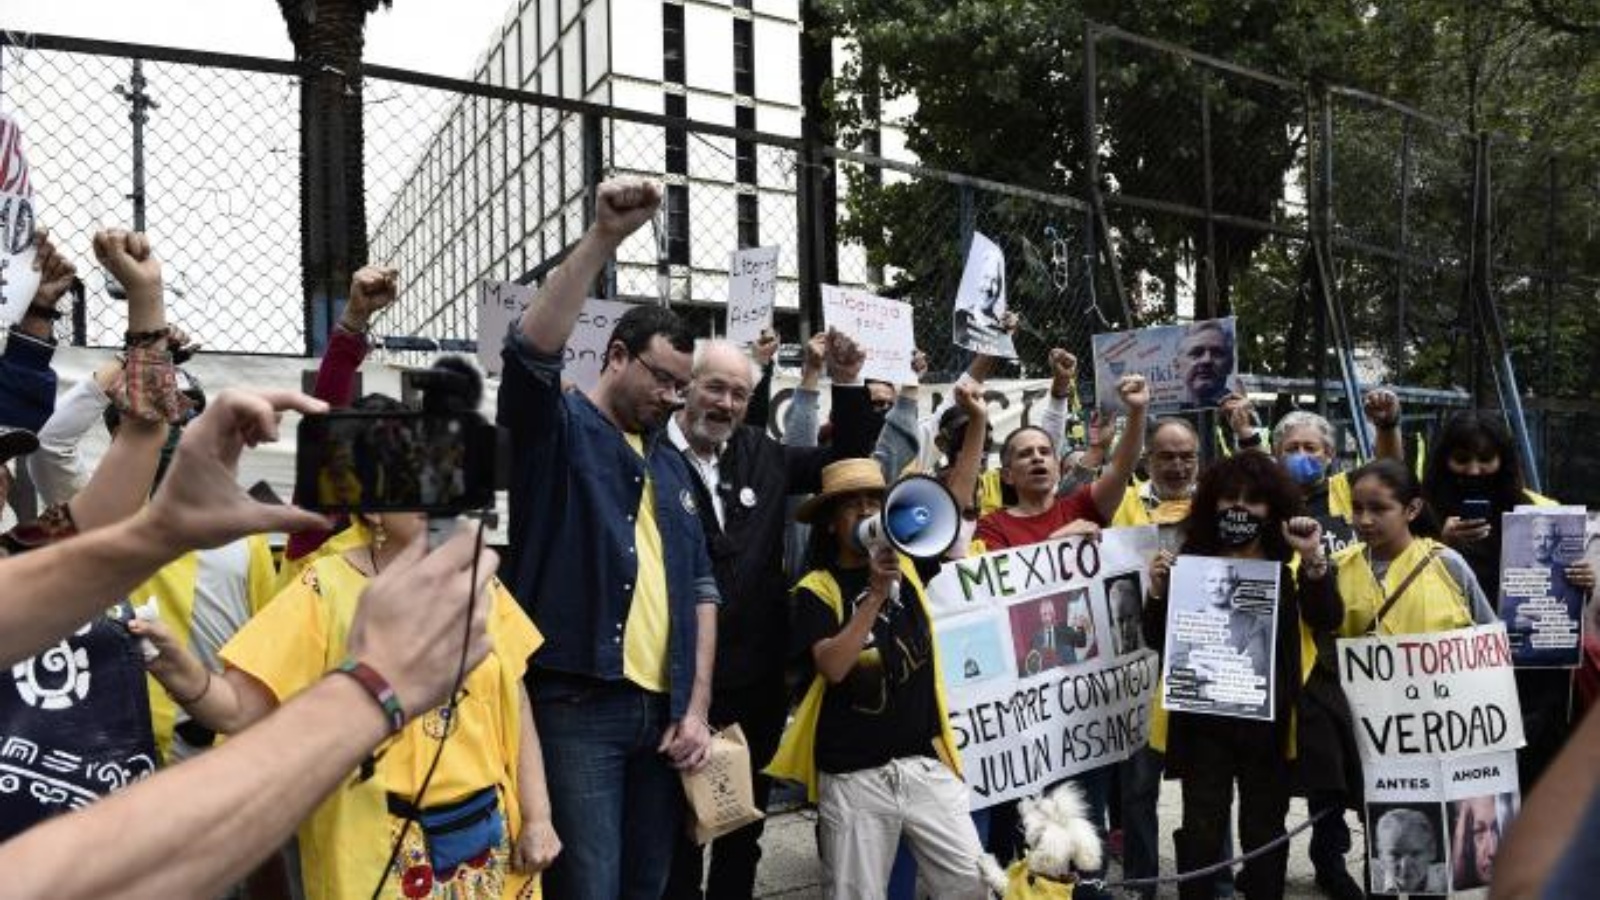 والد وشقيق أسانج يشاركان في الاحتجاج أمام السفارة الأميركية بالعاصمة المكسيكية